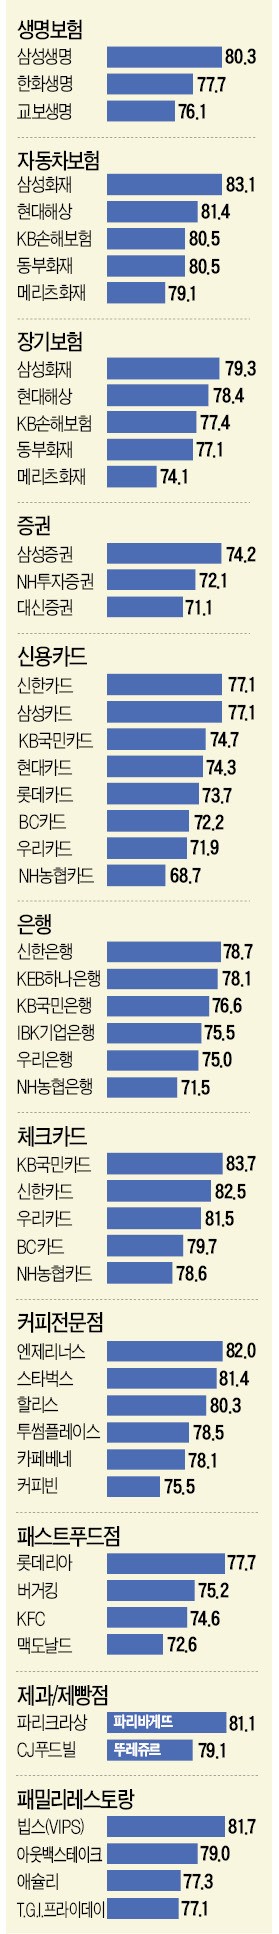 [2017 산업별 KCSI 지수] 삼성생명·삼성화재·삼성증권 1위 '수성'